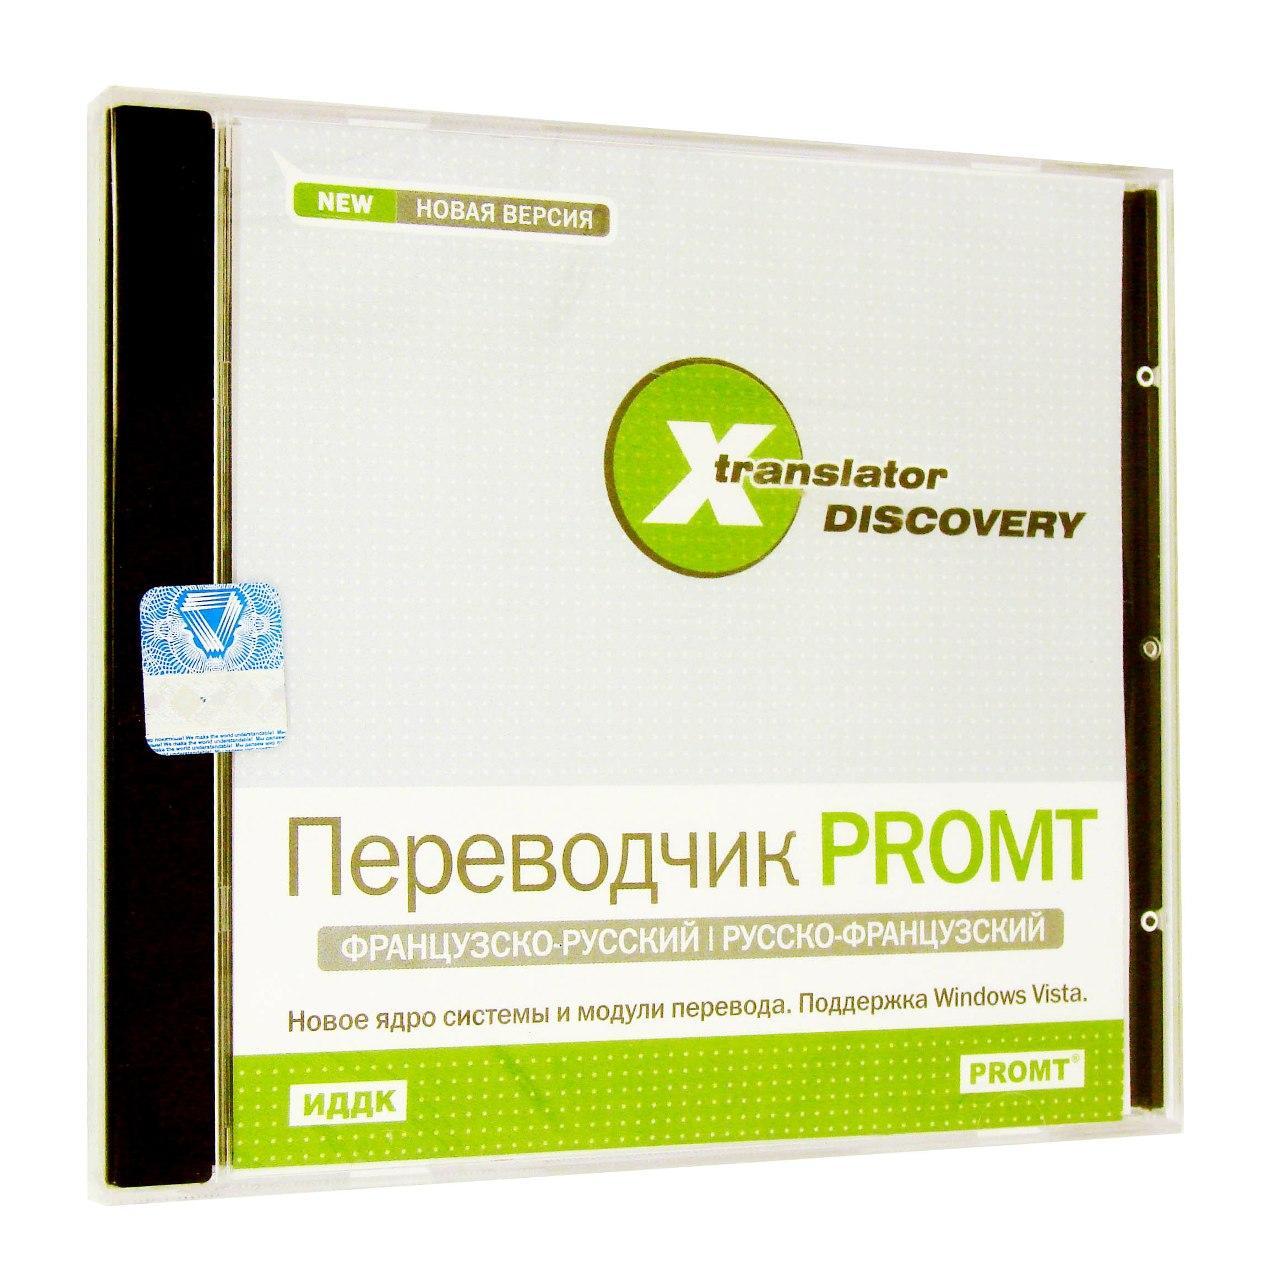 Компьютерный компакт-диск X-Translator Discovery. Переводчик Promt: Французско-русский, русско-французский [X-Translator Disco (PC), фирма "ИДДК", 1CD